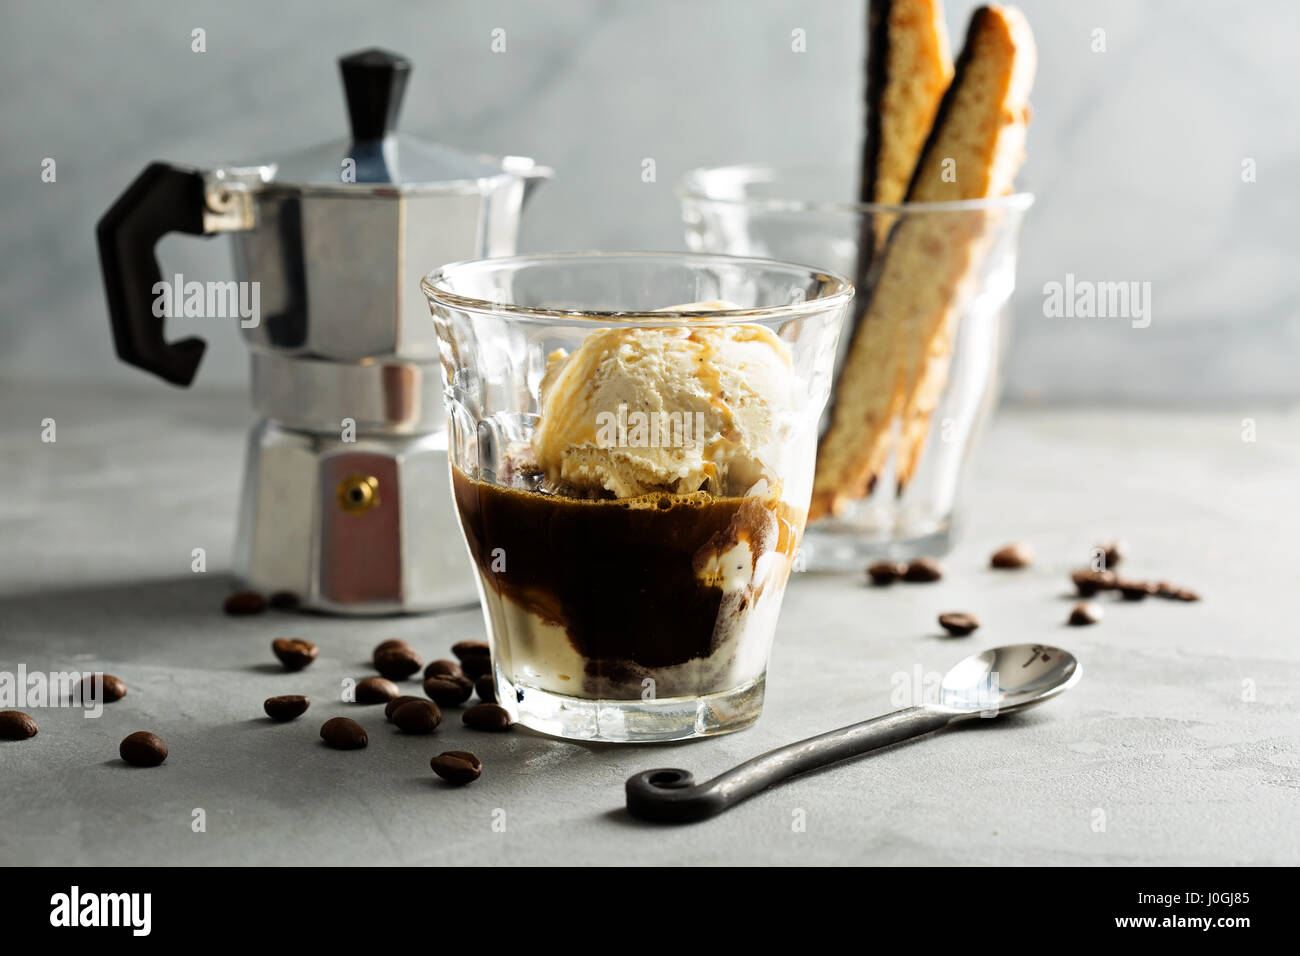 Coffee affogato with vanilla ice cream Stock Photo